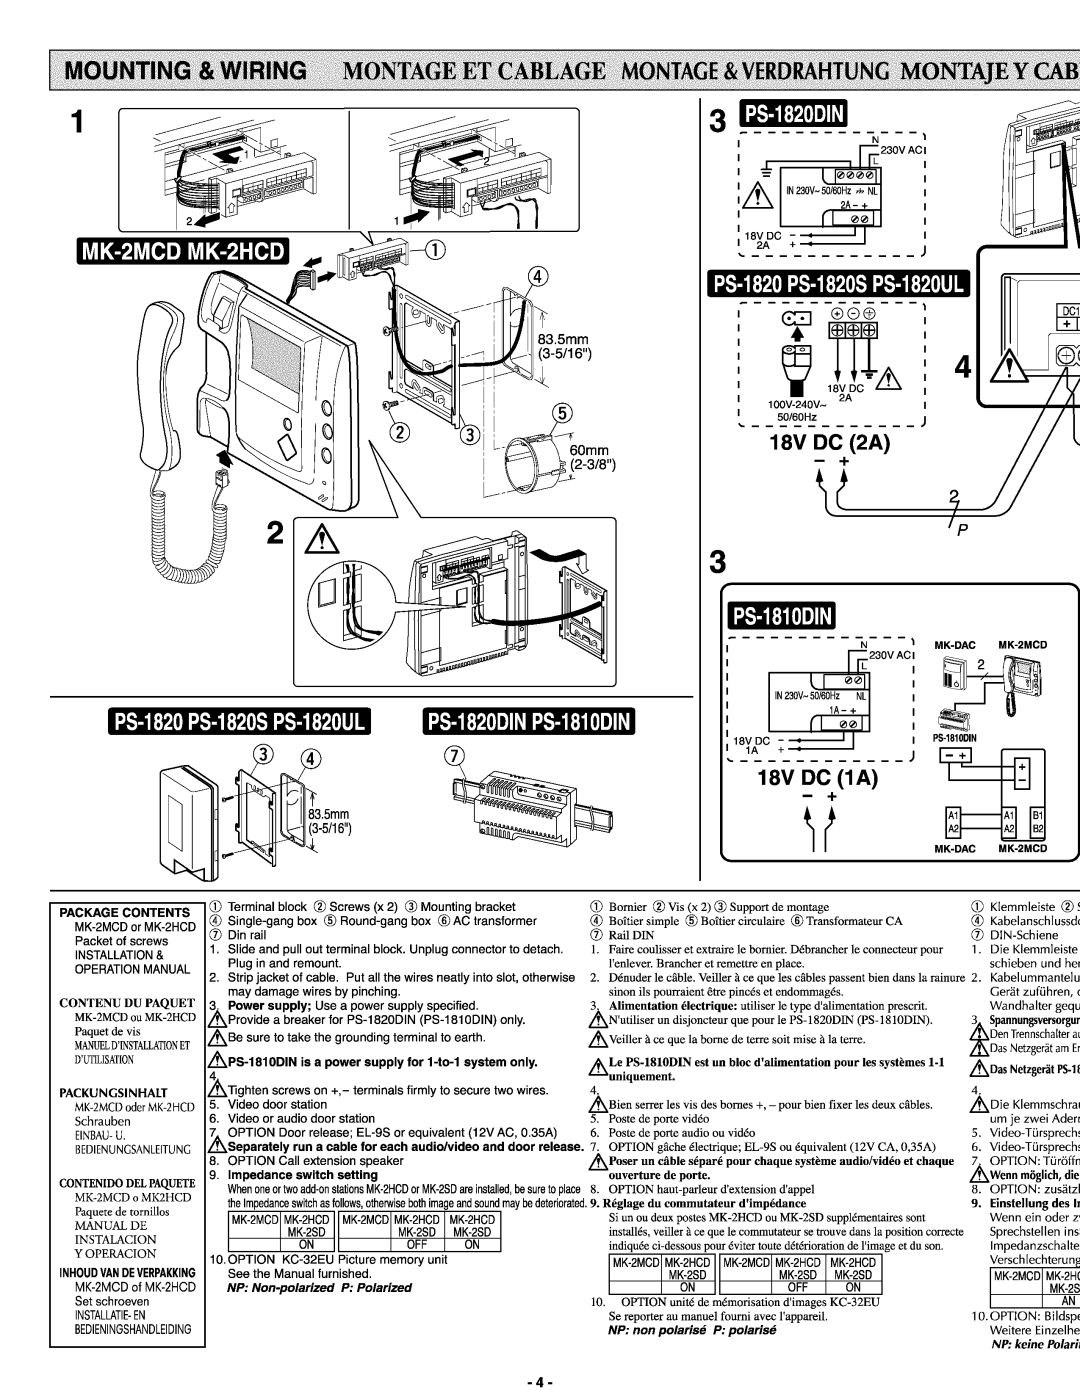 Aiphone Mk-2mcd, MK-2HCD manual 